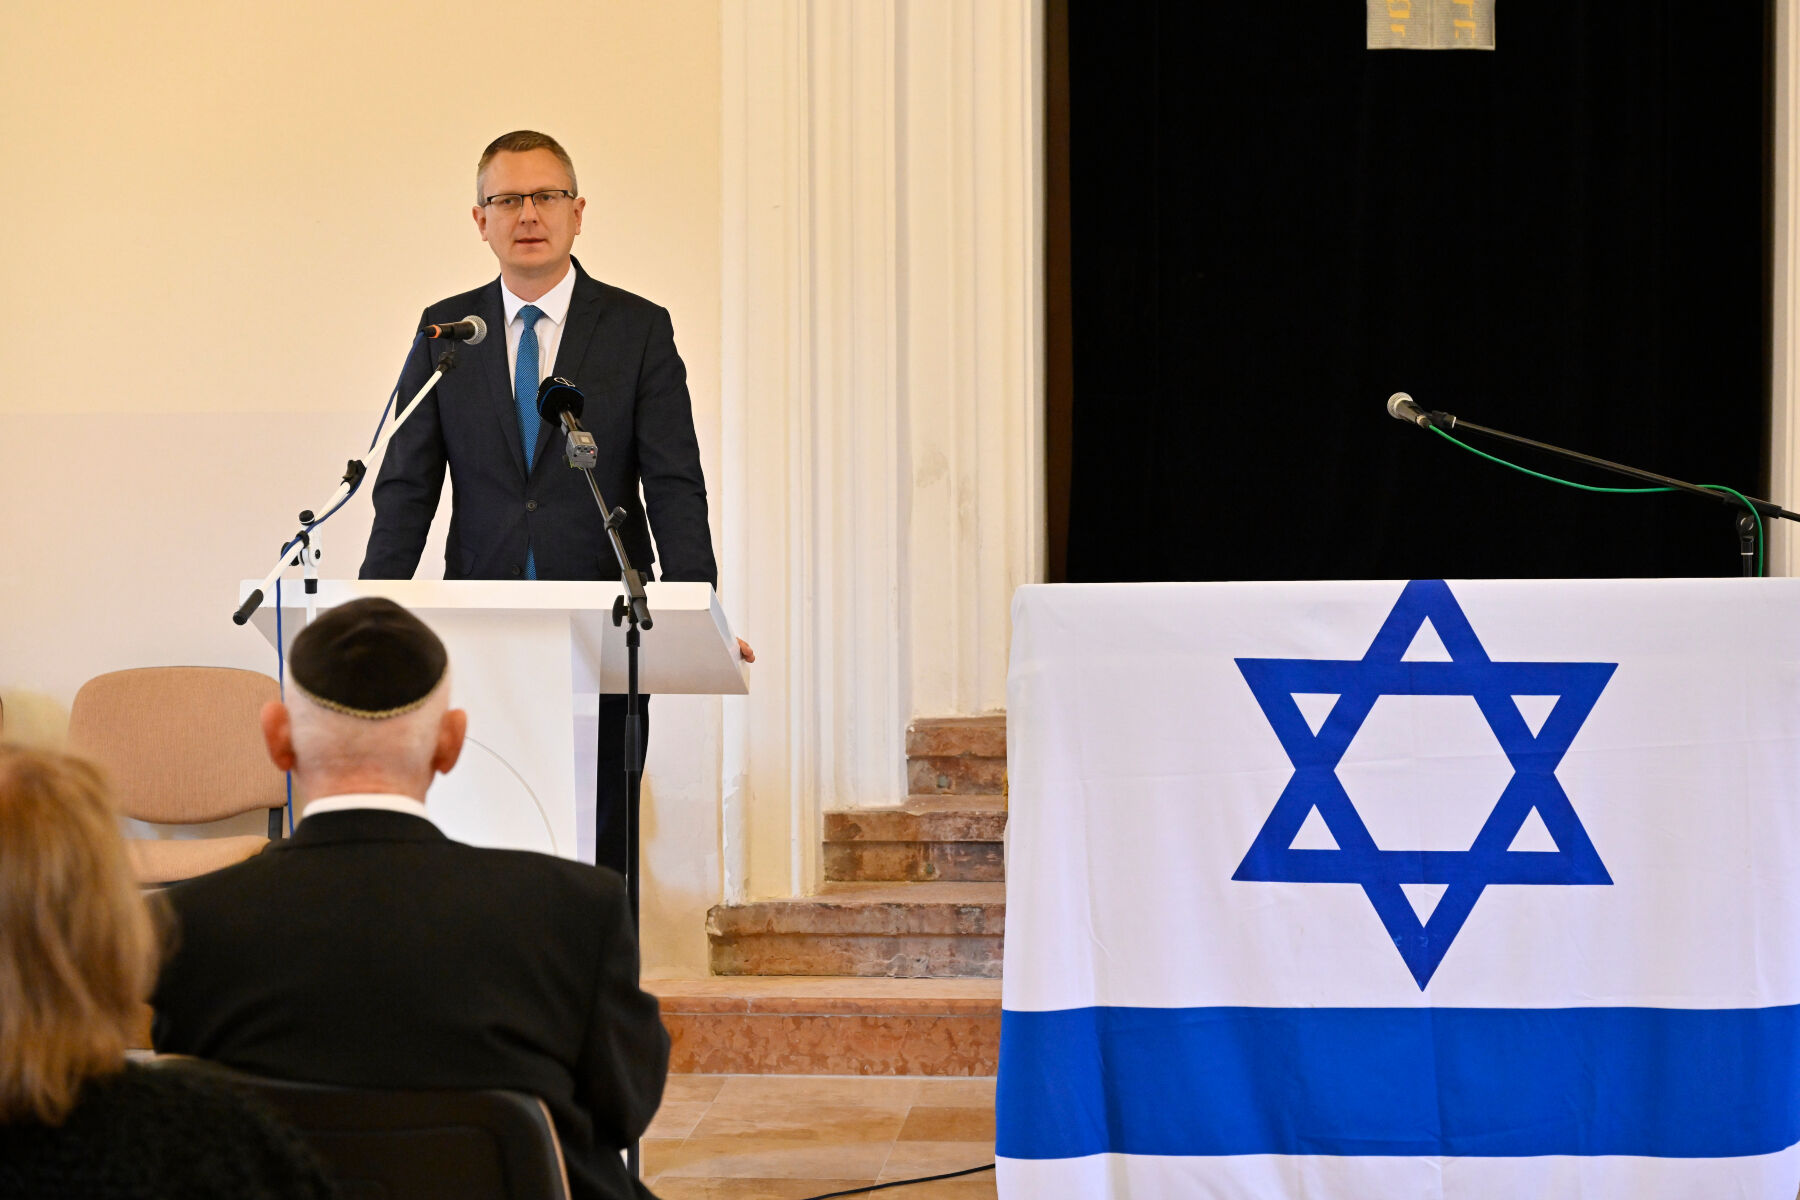 Rétvári Bence: Magyarország nulla toleranciát hirdetett az antiszemitizmussal szemben